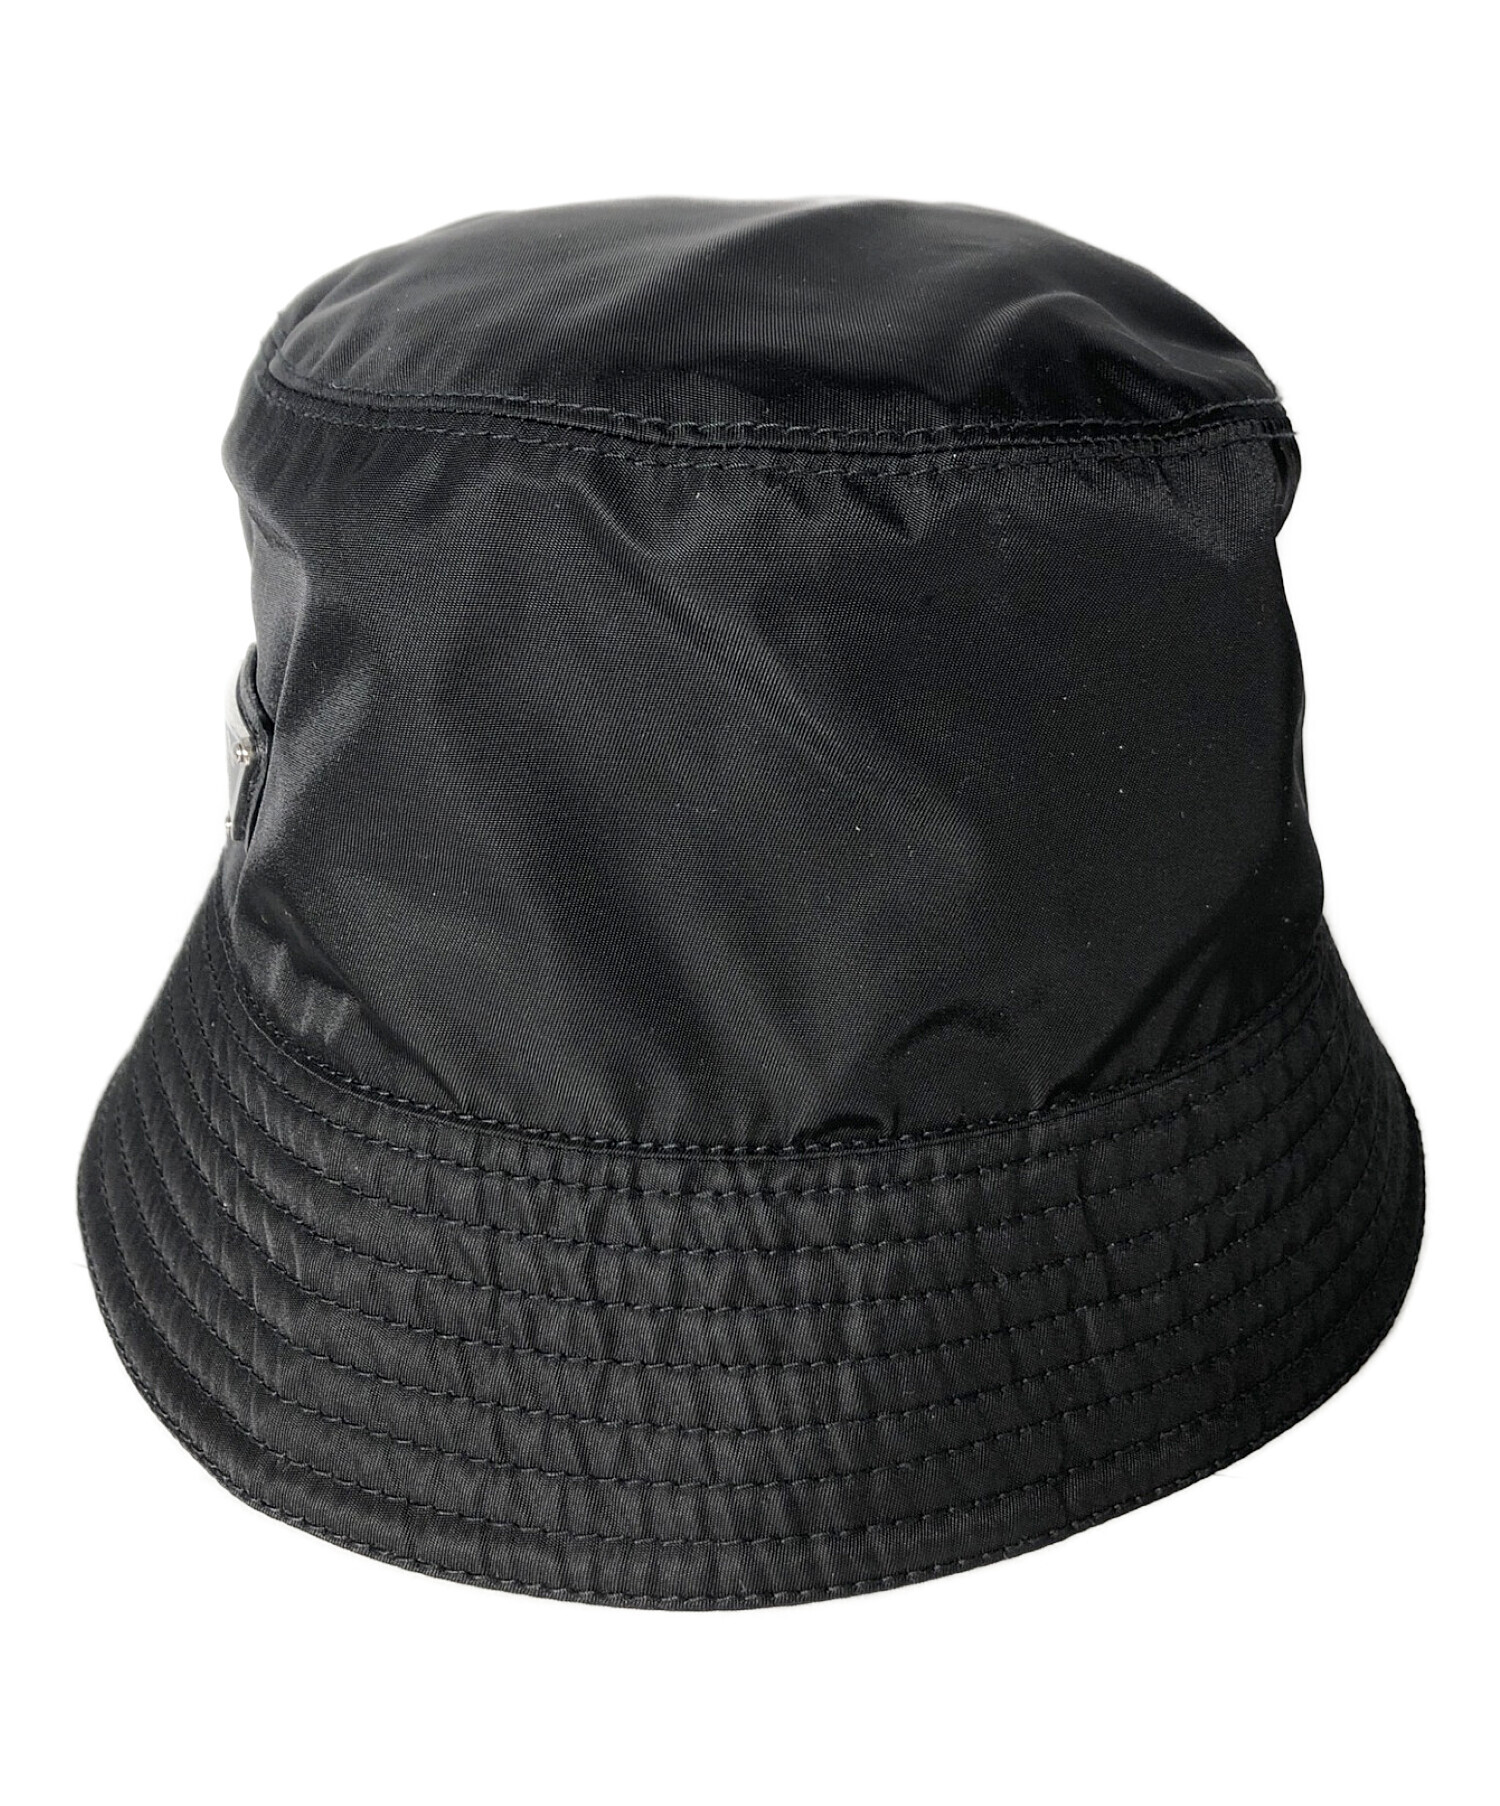 プラダ PRADA バゲットハット サイズXL 春のコレクション - 帽子